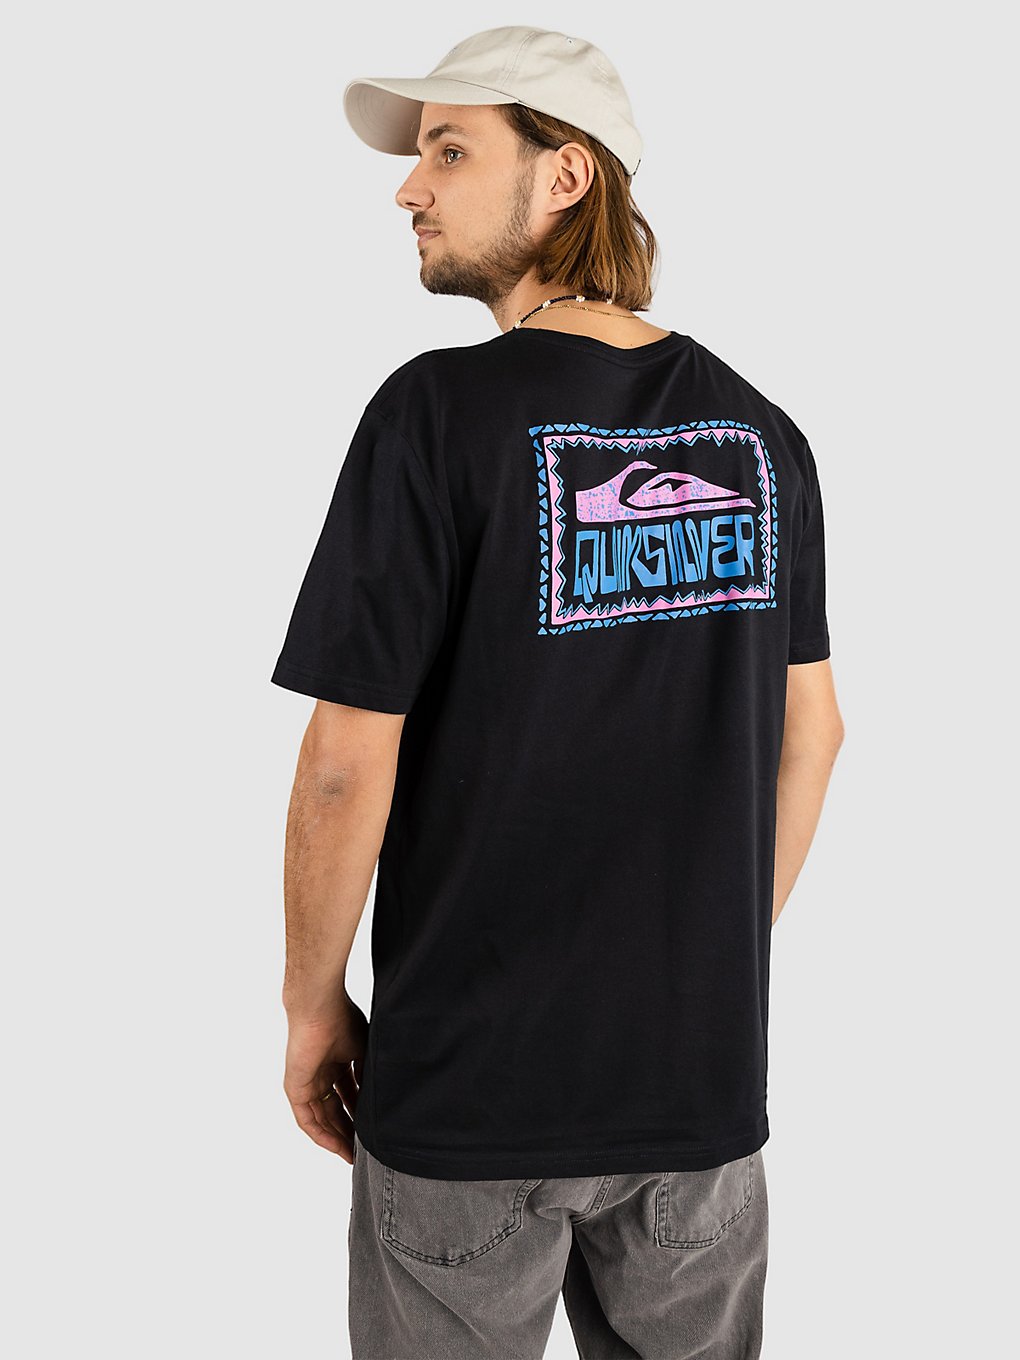 Quiksilver Warped Frames T-Shirt black kaufen